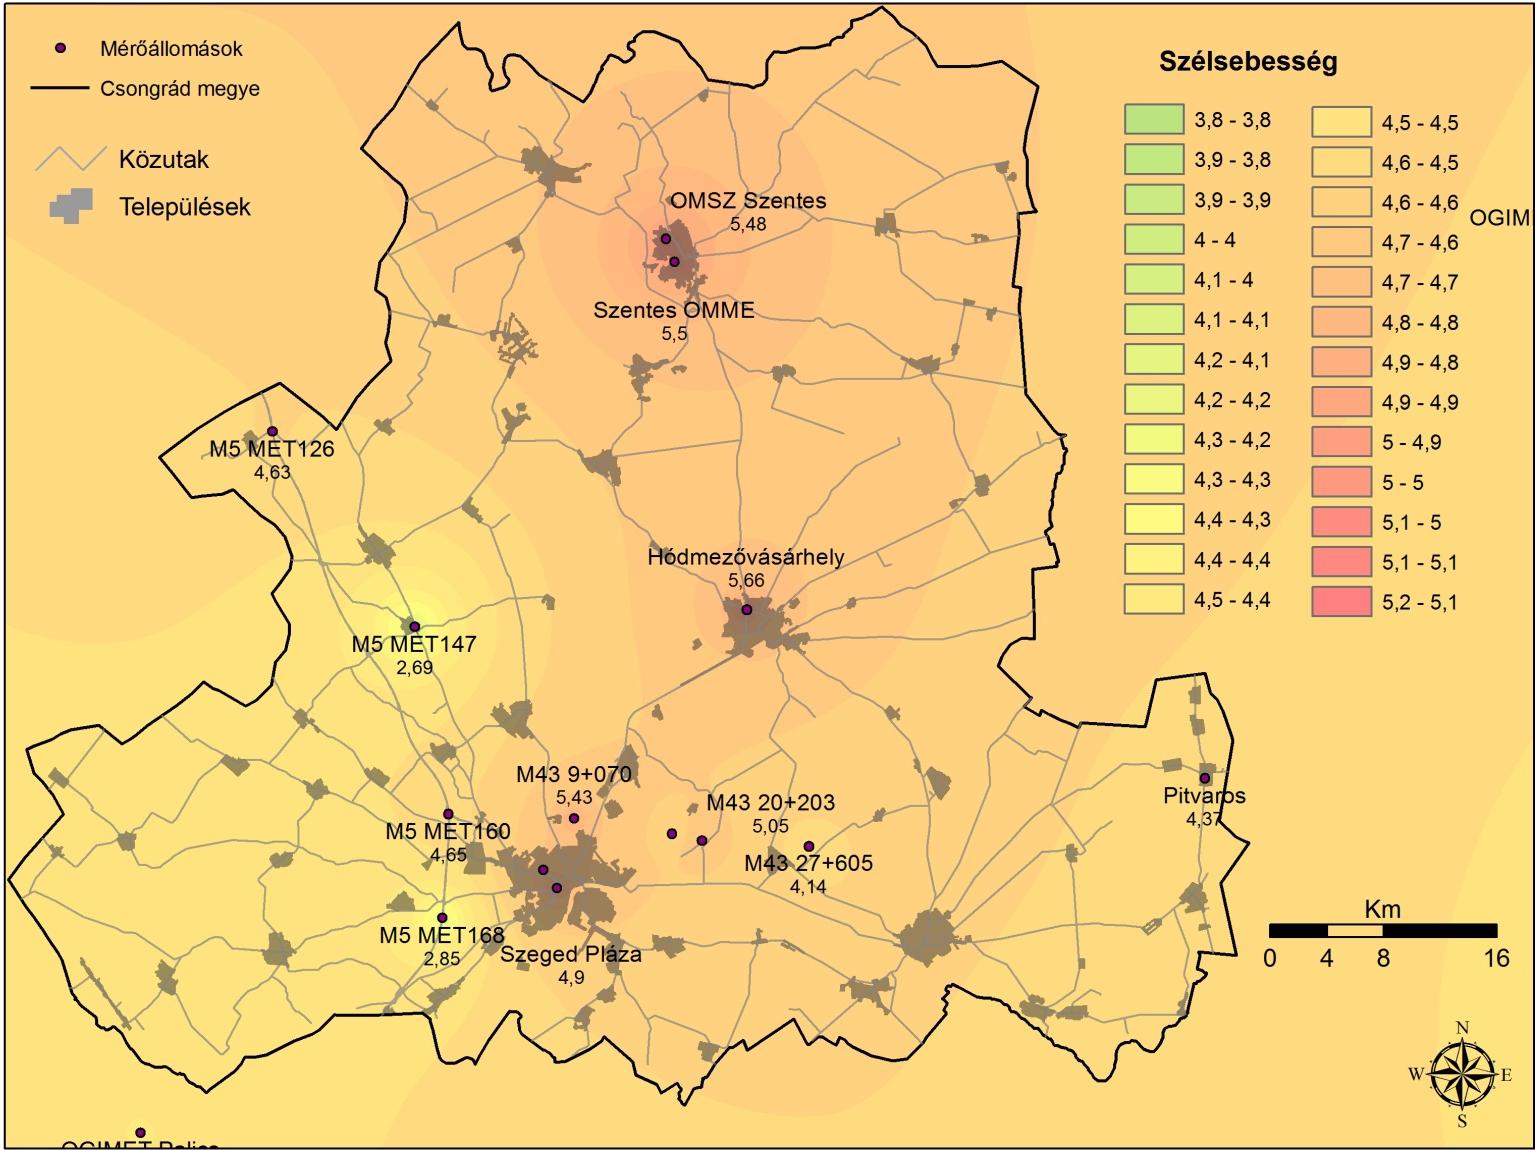 Csongrád megye szélsebesség térképe 100 m magasságban számolt 2012.